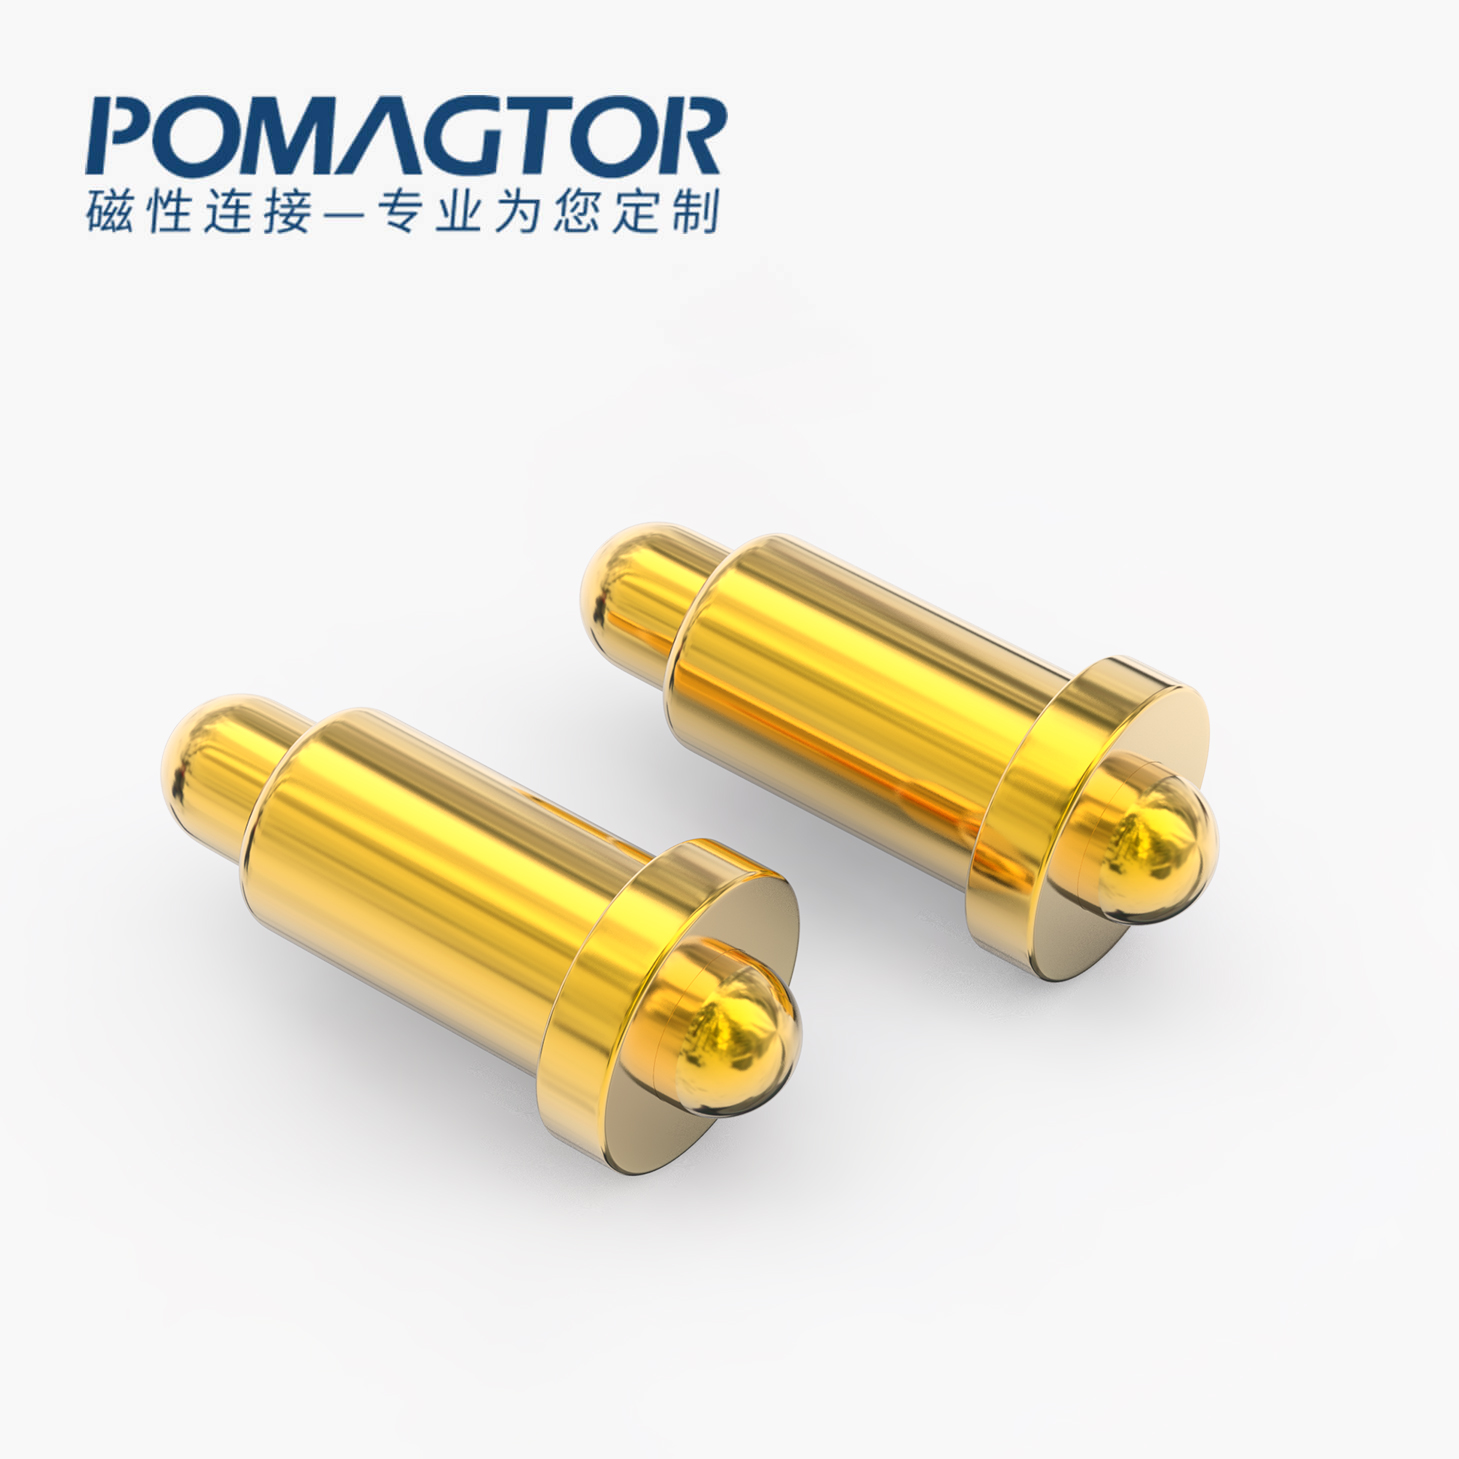 POGO PIN 双头式：电镀黄铜Au1u，电压12V，电流1A，弹力10000次+，工作温度-40°~150°